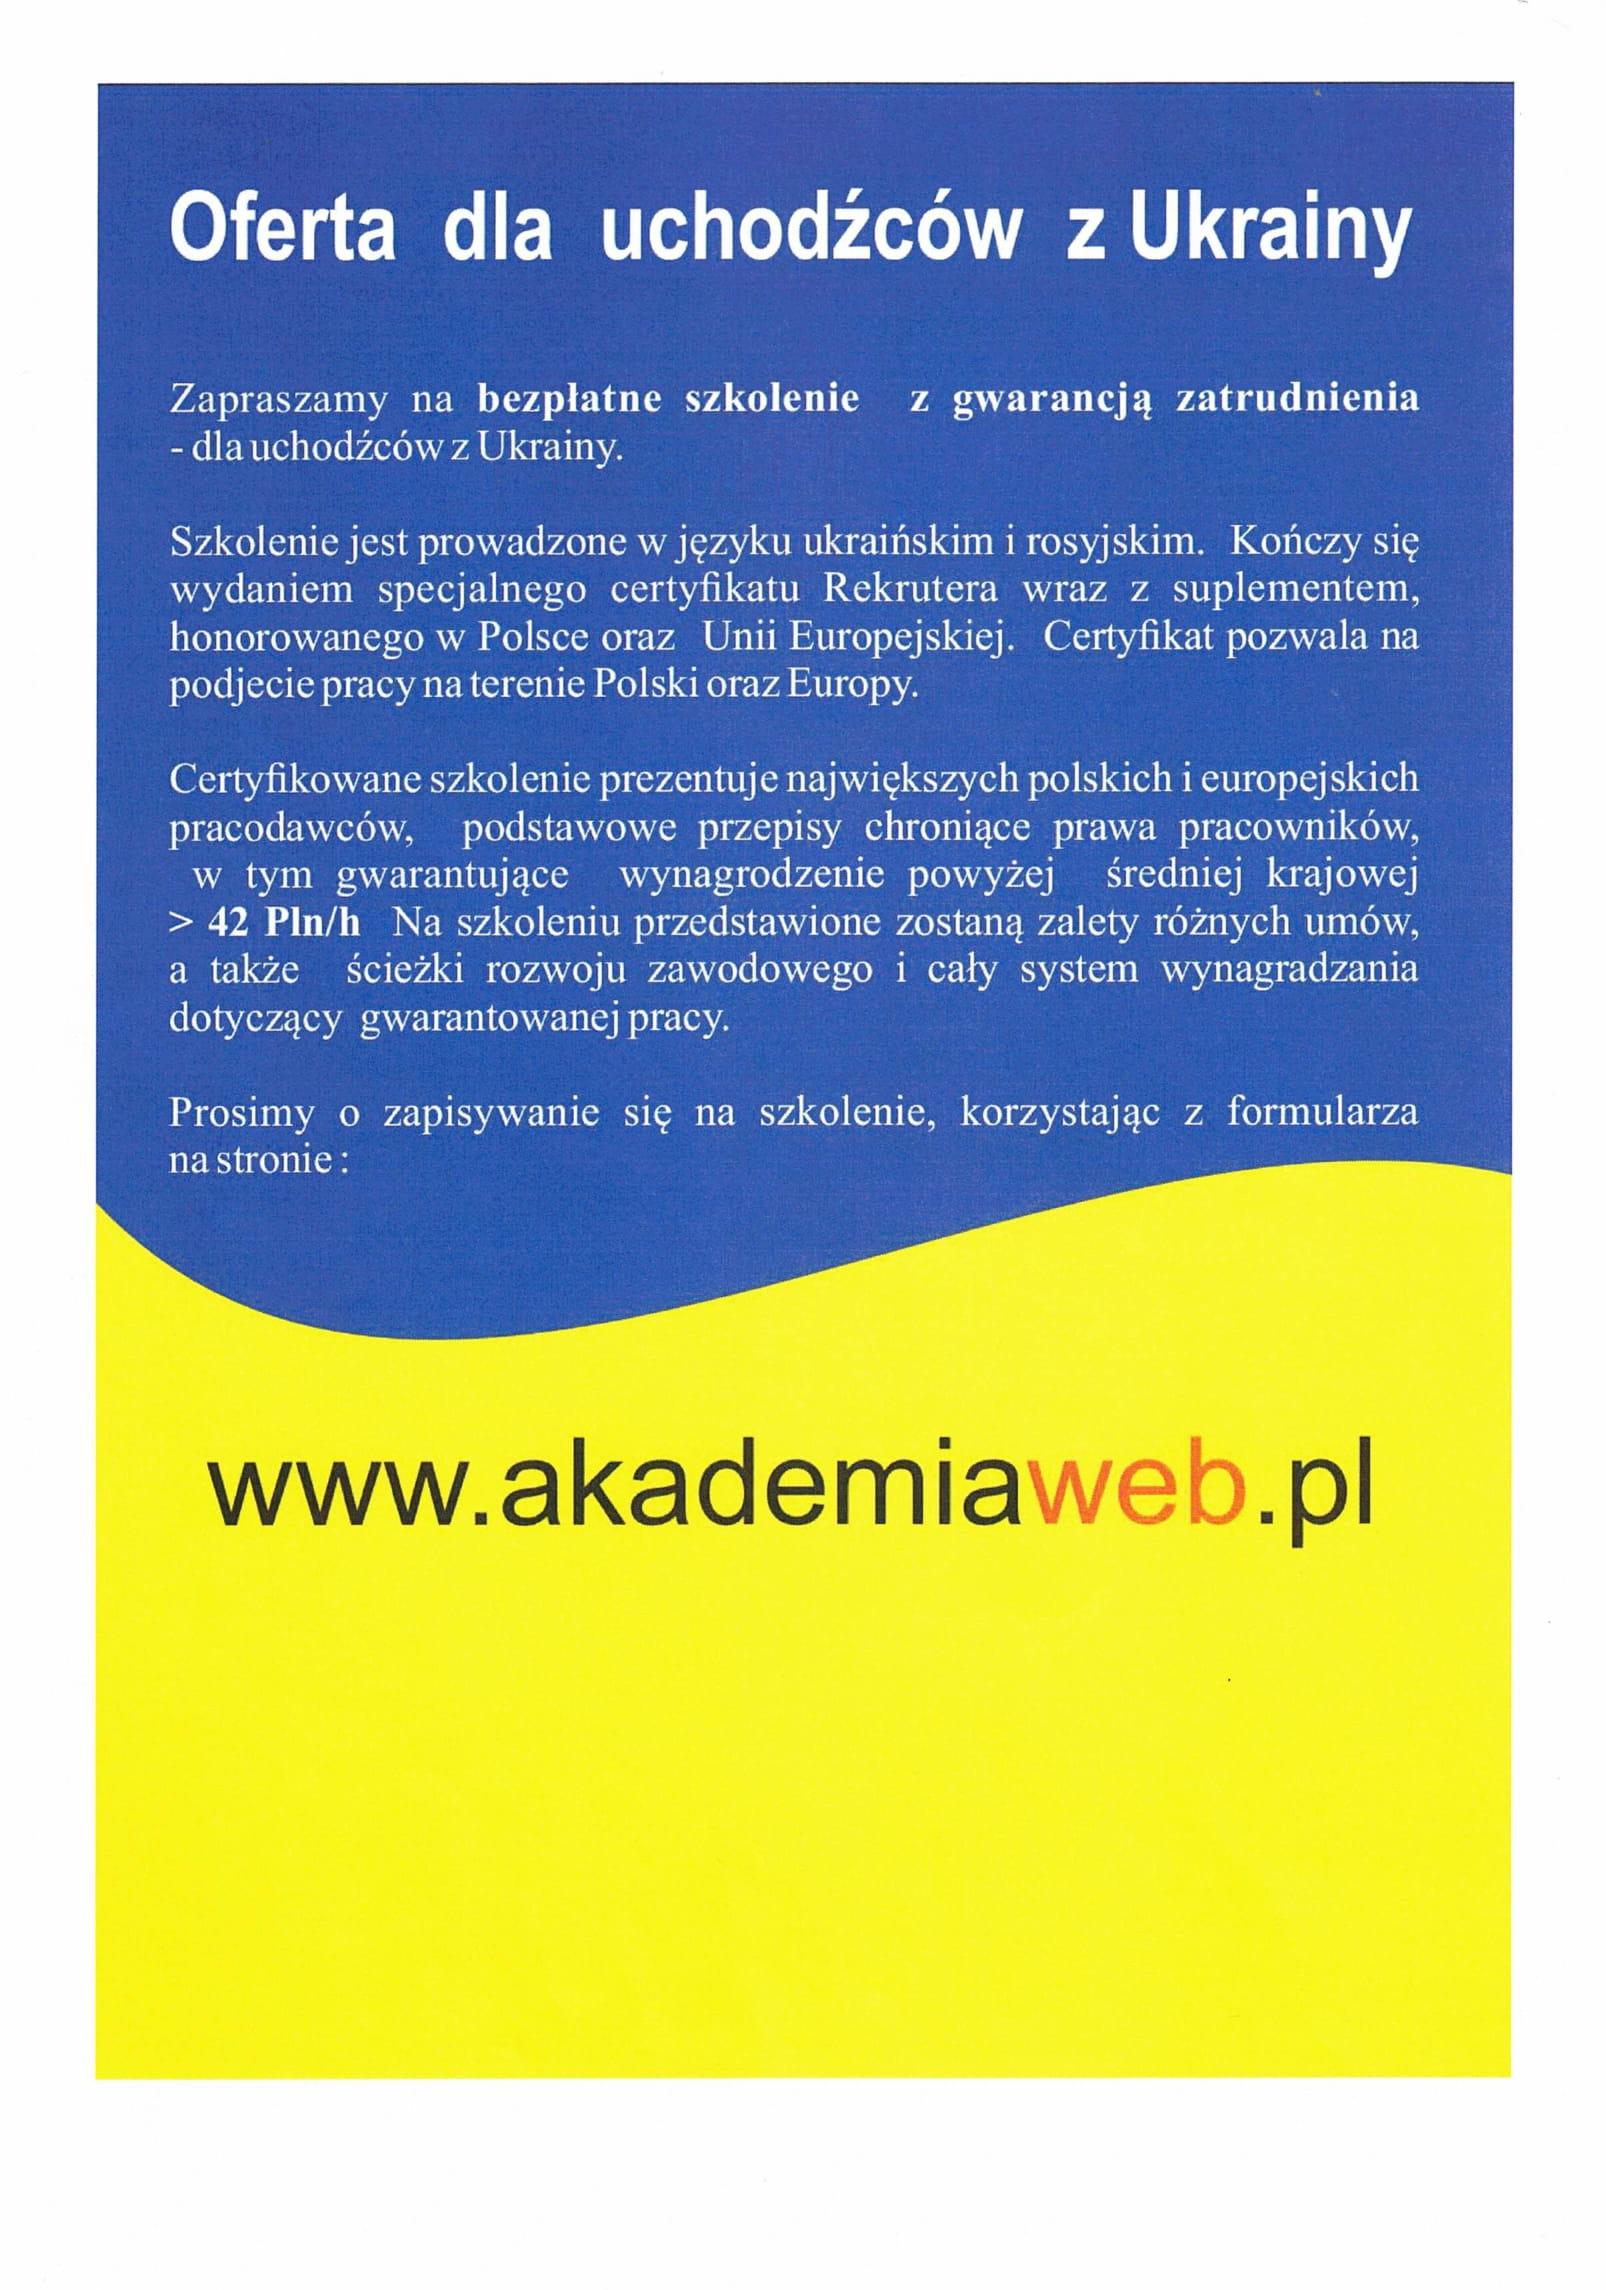 Oferta dla uchodźców z Ukrainy - ulotka w języku polskim